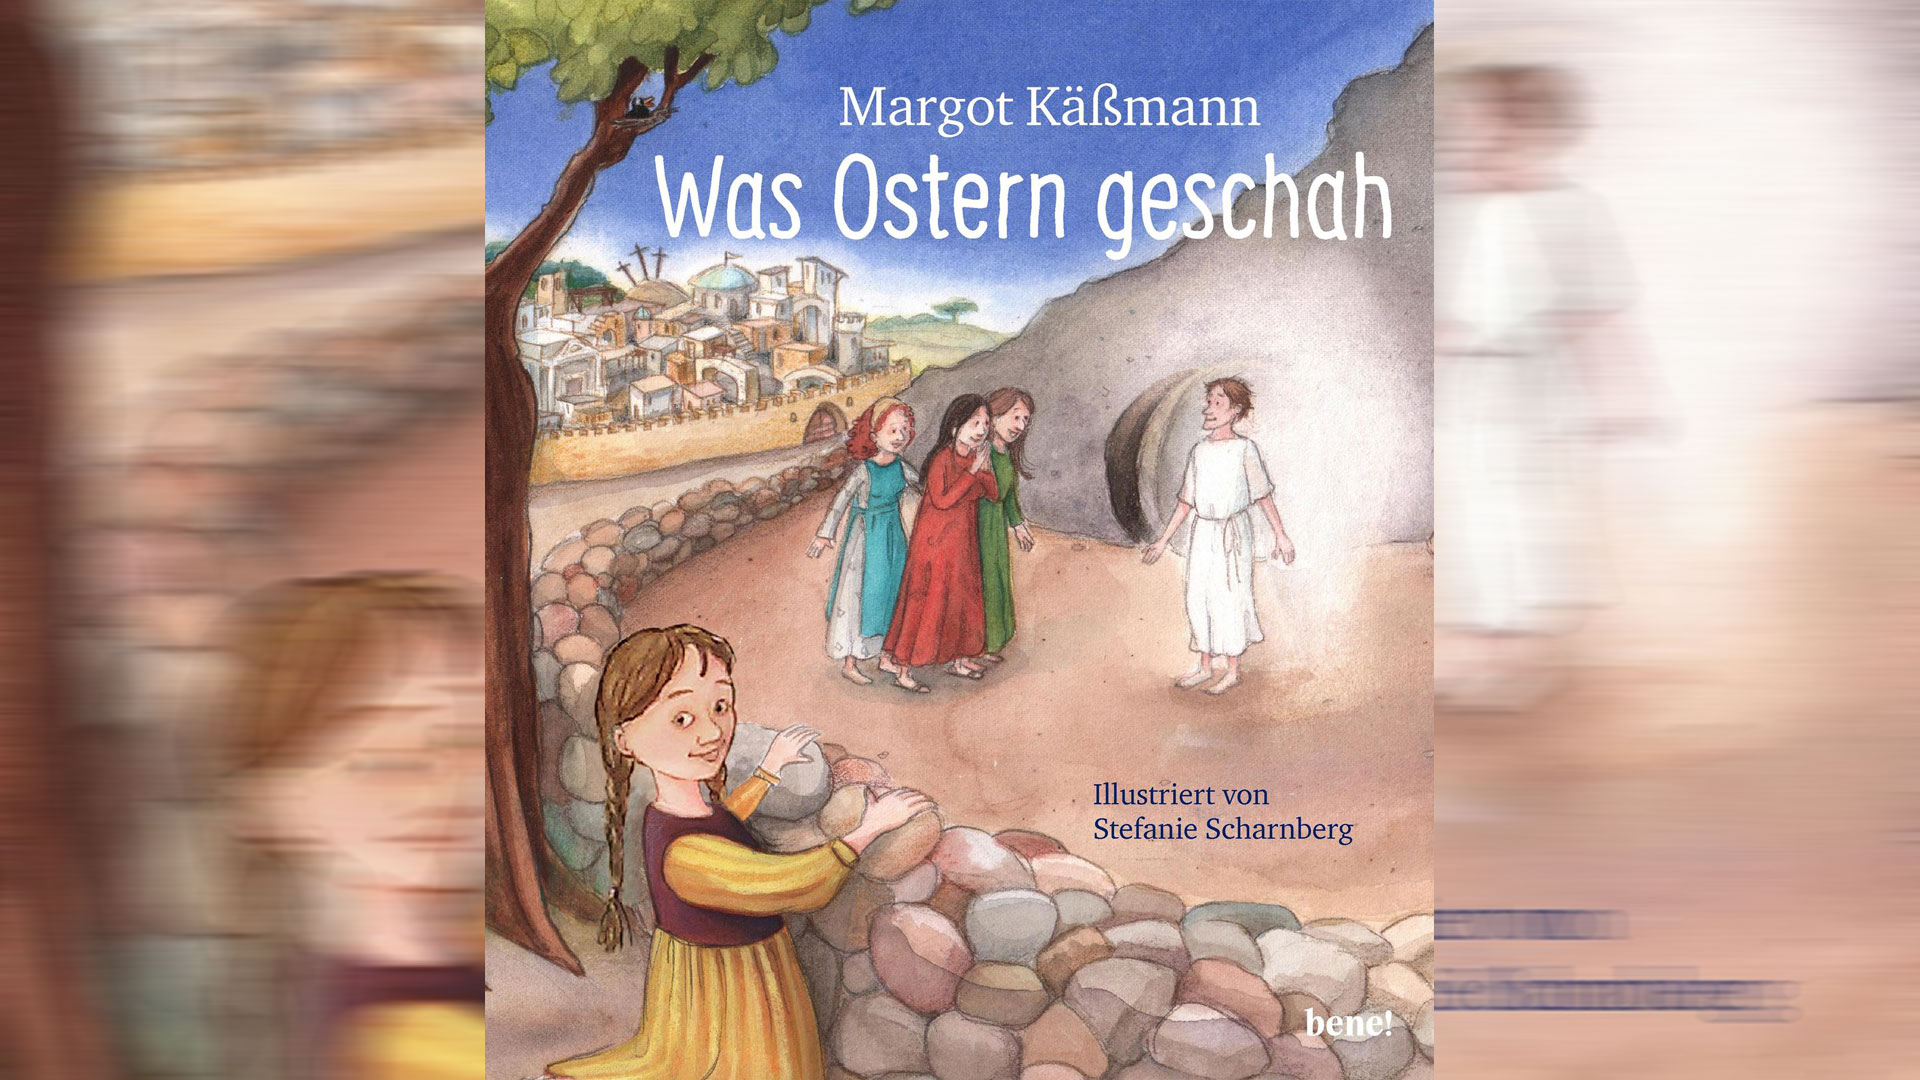 Margot Käßmann hat die Ostergeschichte kindgerecht aufbereitet. In dem Buch „Was Ostern geschah“ erzählt sie die Ereignisse rund um Jesus aus Sicht des Mädchens Rebekka.